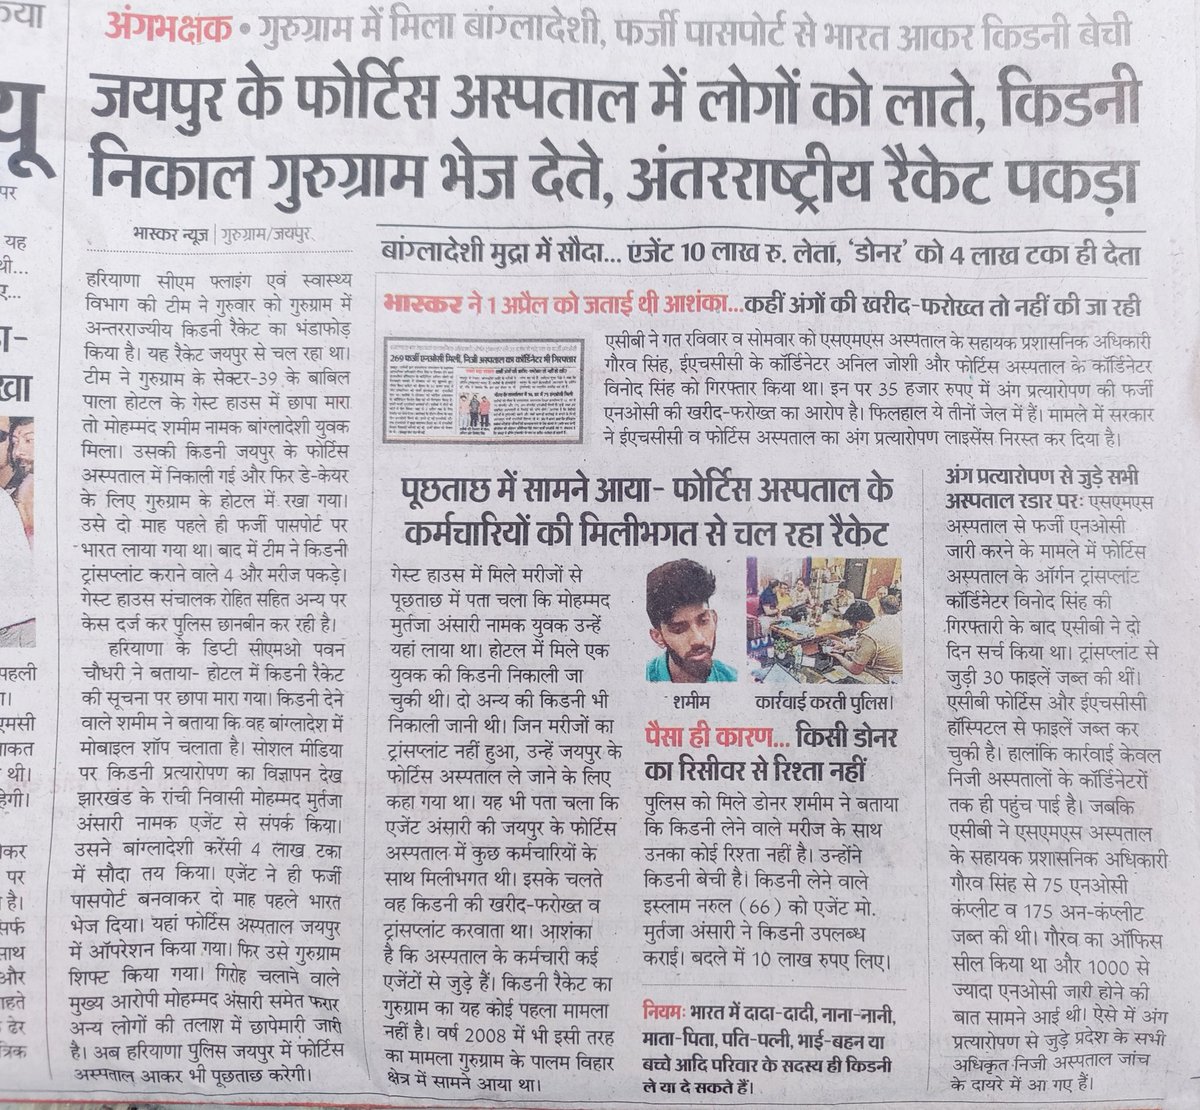 फॉर्टीस हॉस्पिटल जैसे जनता के अंगो को खरीदने बेचने का काम कर रहे है। @RajCMO इसकी गहराई से जांच हो गई तो बड़े बड़े नेटवर्क पकड़े जायेगें।
राजस्थान में किडनी और अंगो को खरीदने वाले सौदागरो को सख्त से सख्त सजा मिलनी चाहिए।
#फोर्टिस_Hospital_बैन_करो 
@1stIndiaNews @8PMnoCM